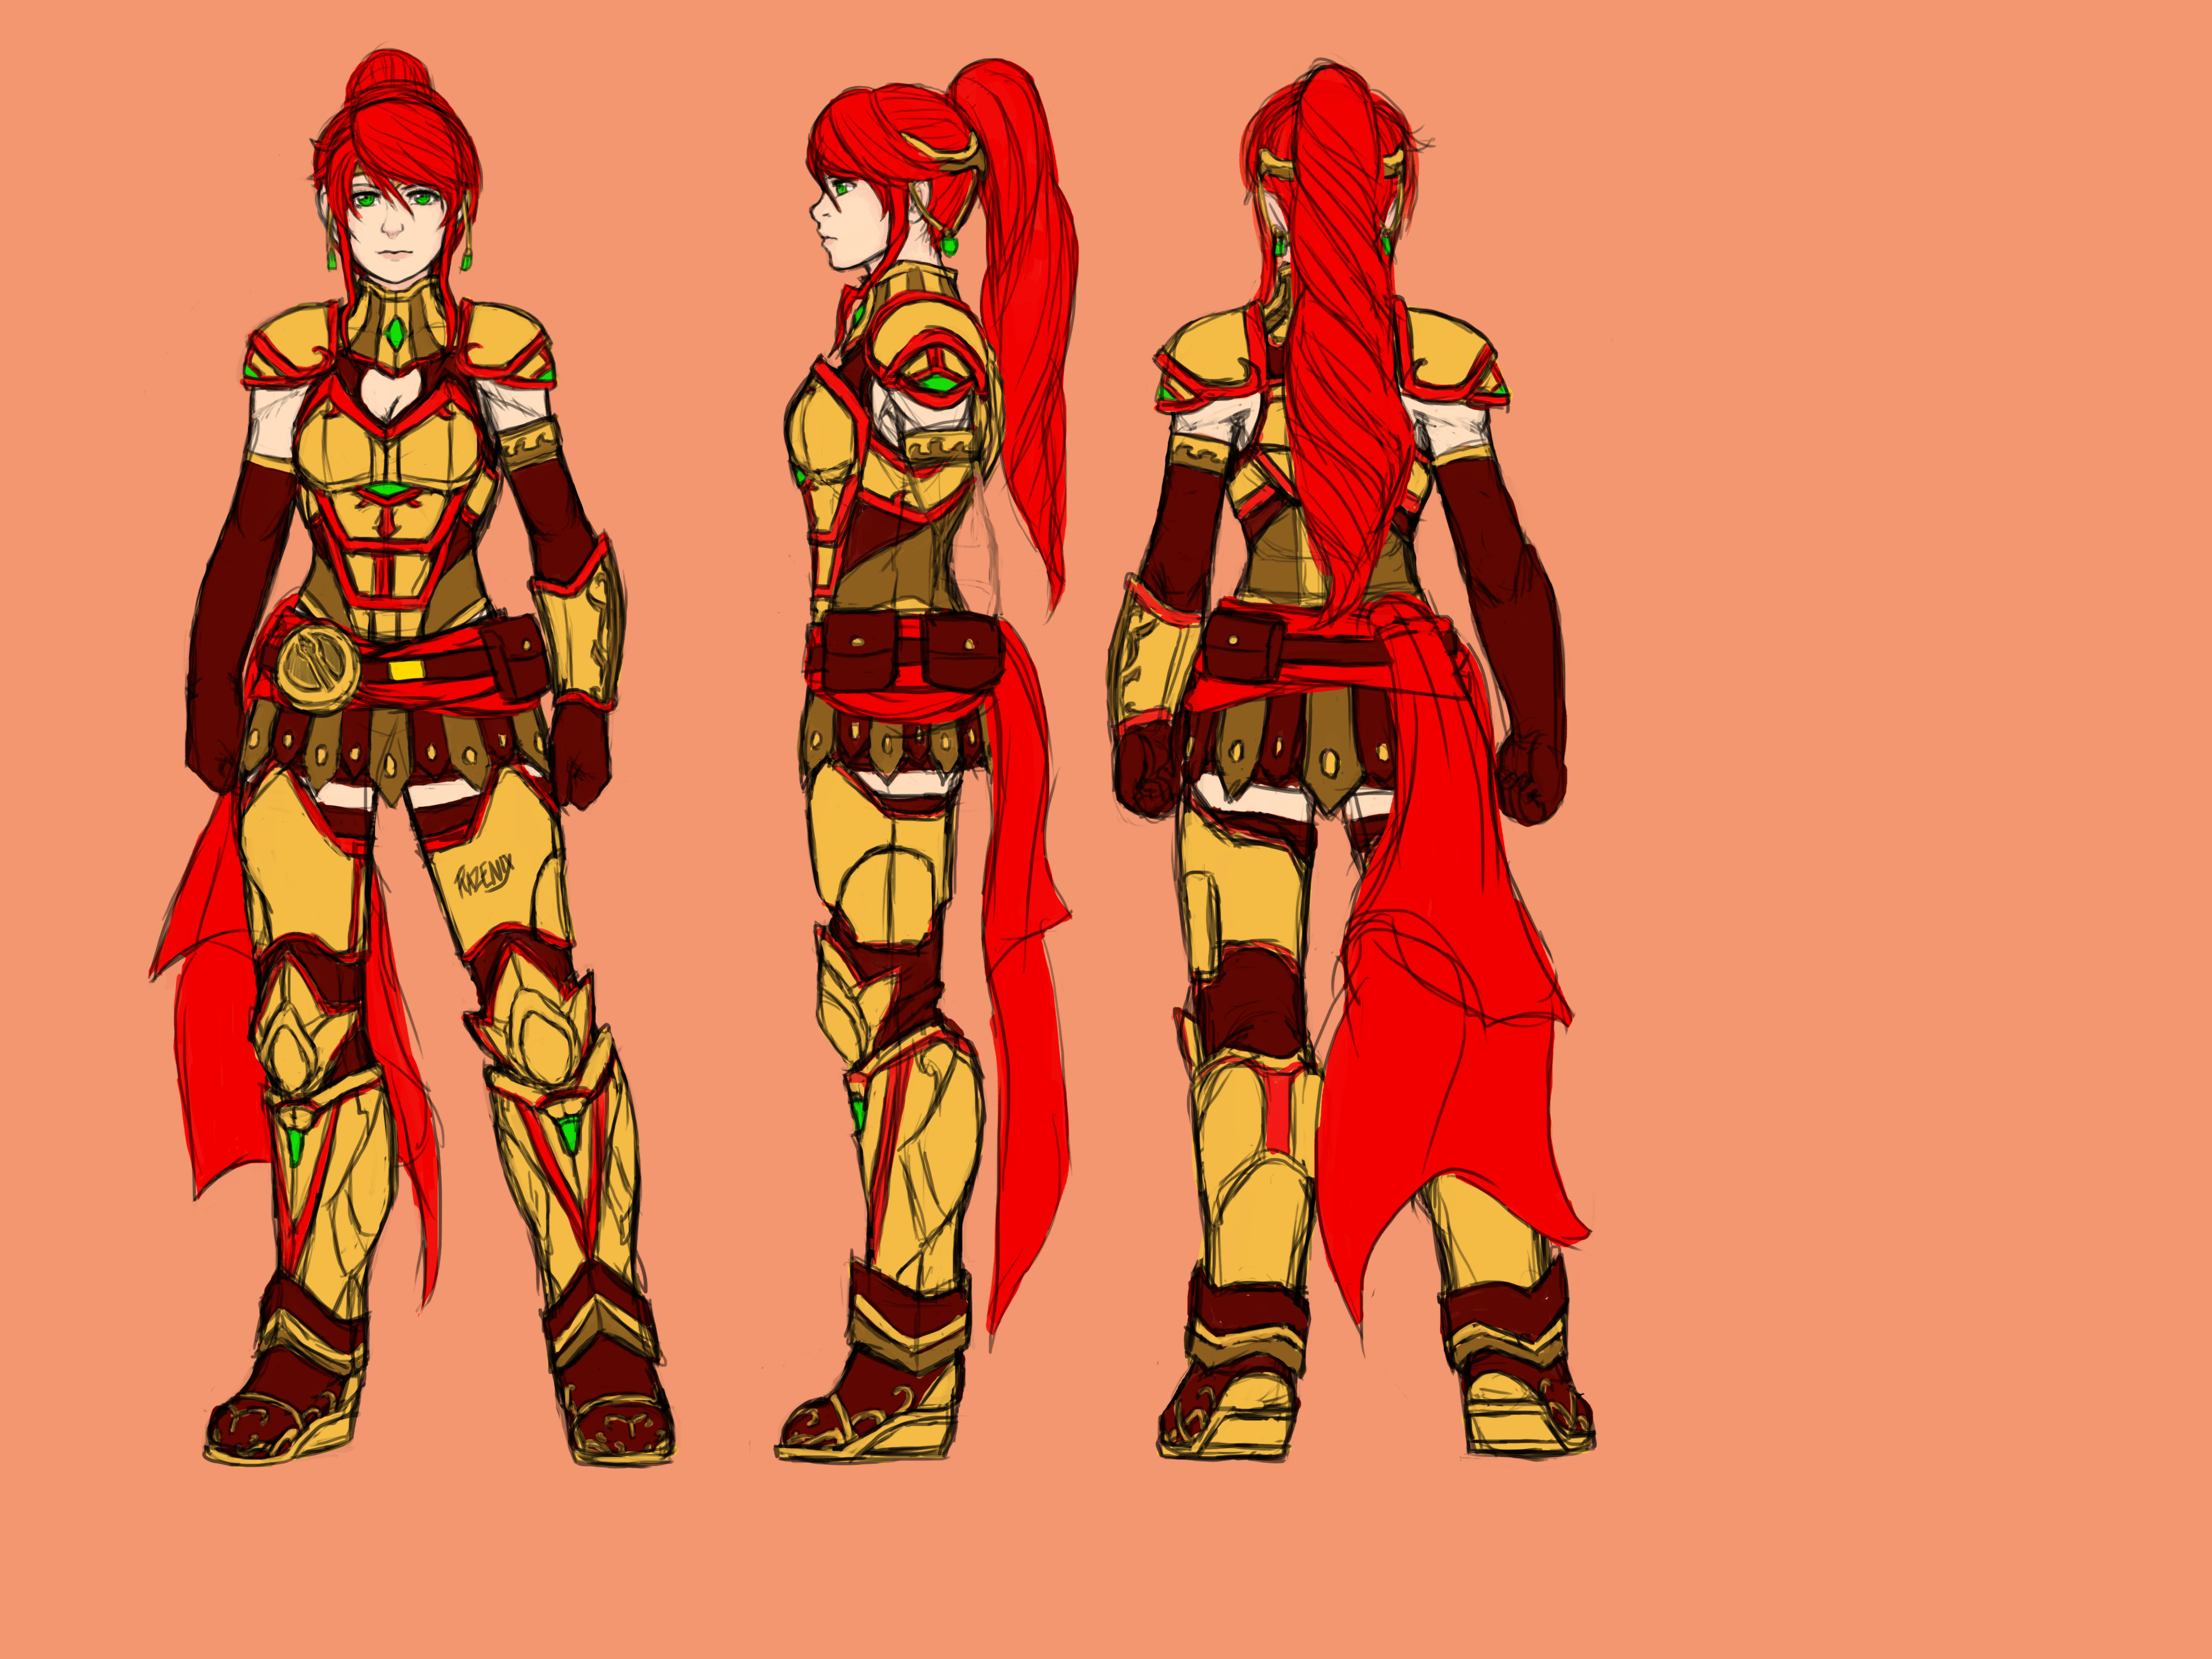 Pyrrha Nikos armor guide by Razenix.